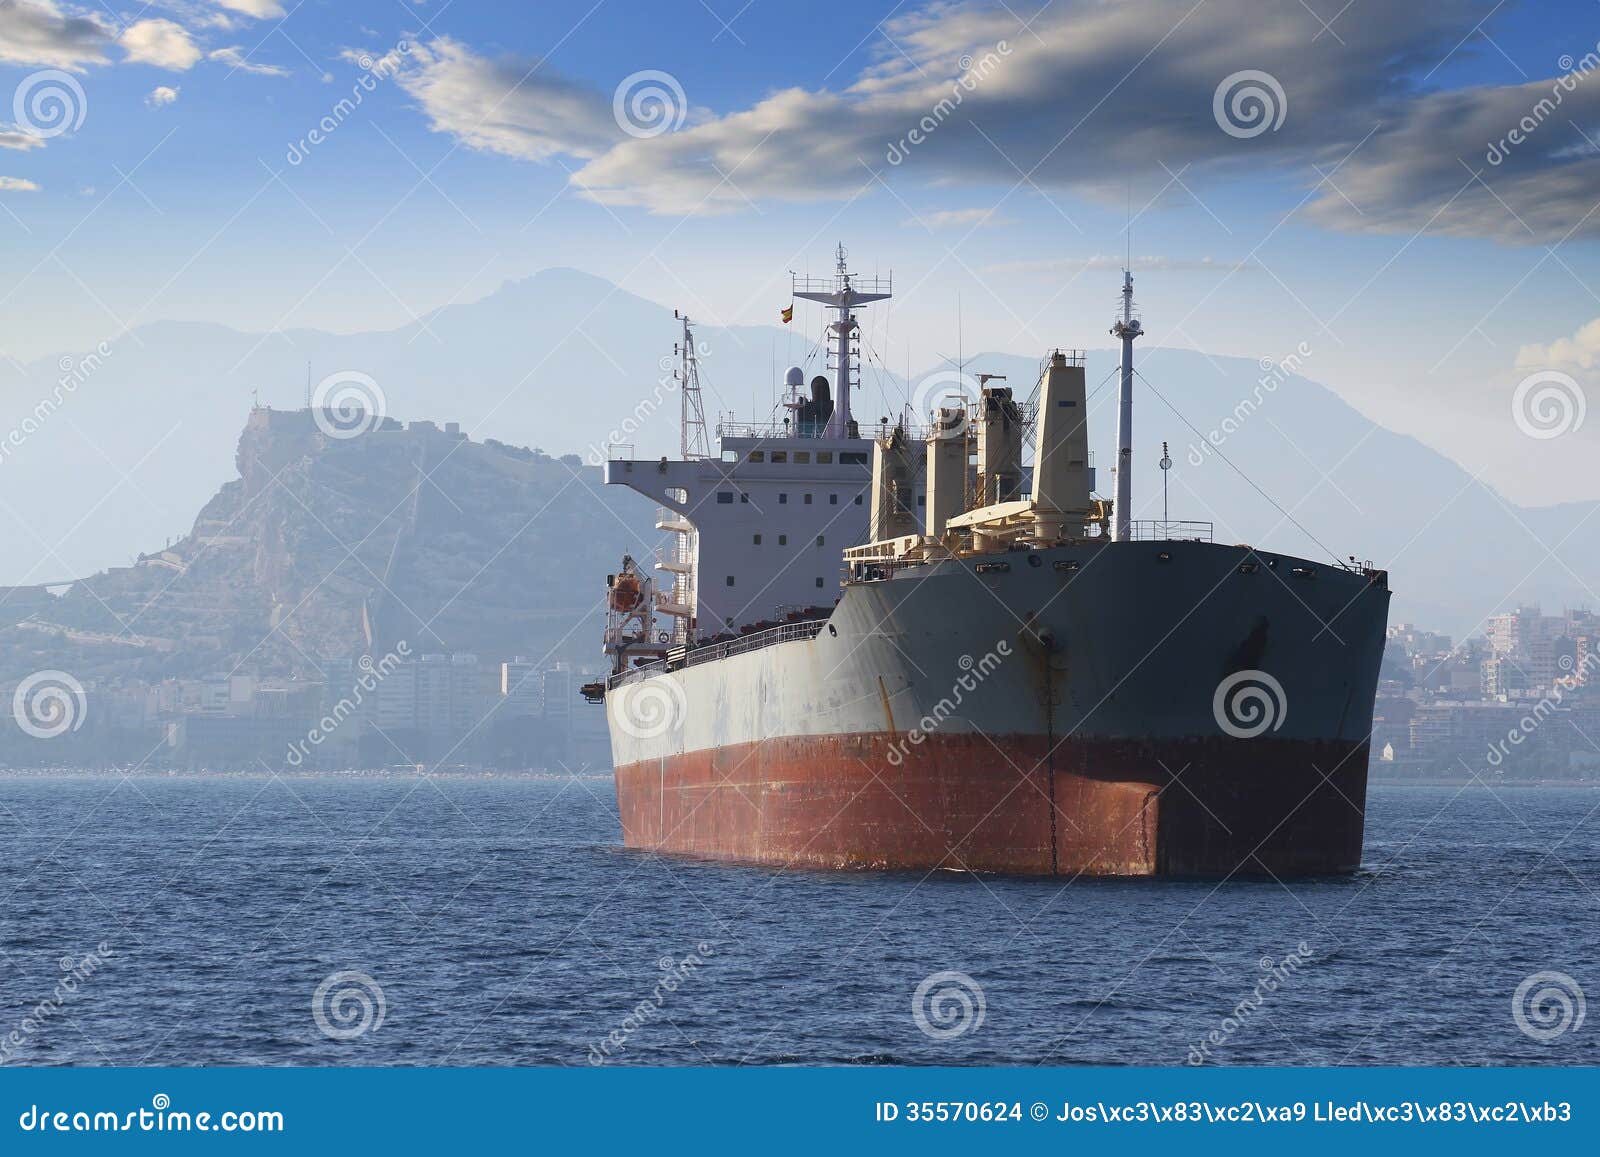 general cargo vessel: forward zon